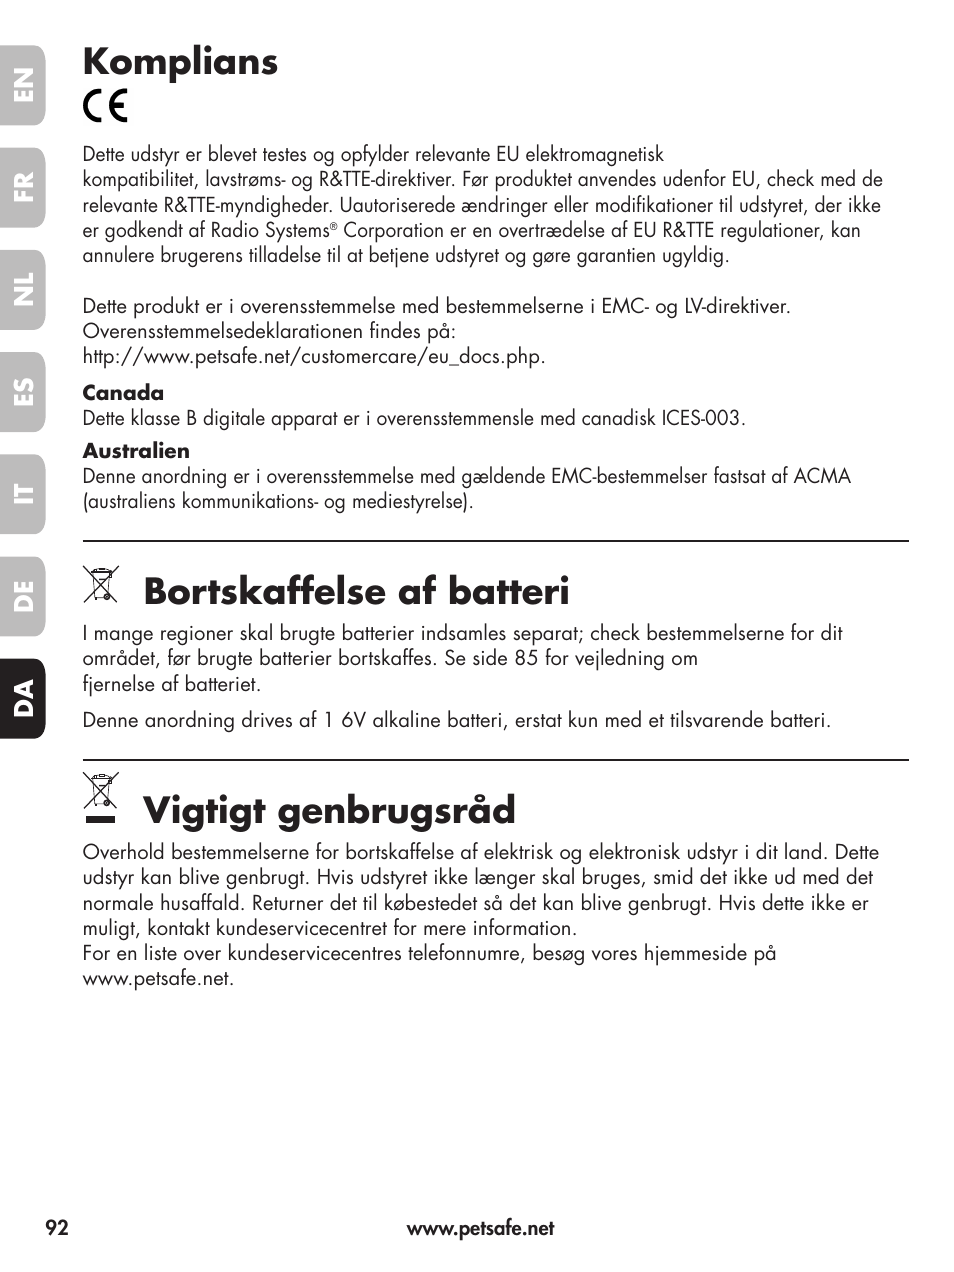 Komplians, Bortskaffelse af batteri, Vigtigt genbrugsråd | Petsafe Deluxe  Little Dog Spray Bark Control User Manual | Page 92 / 96